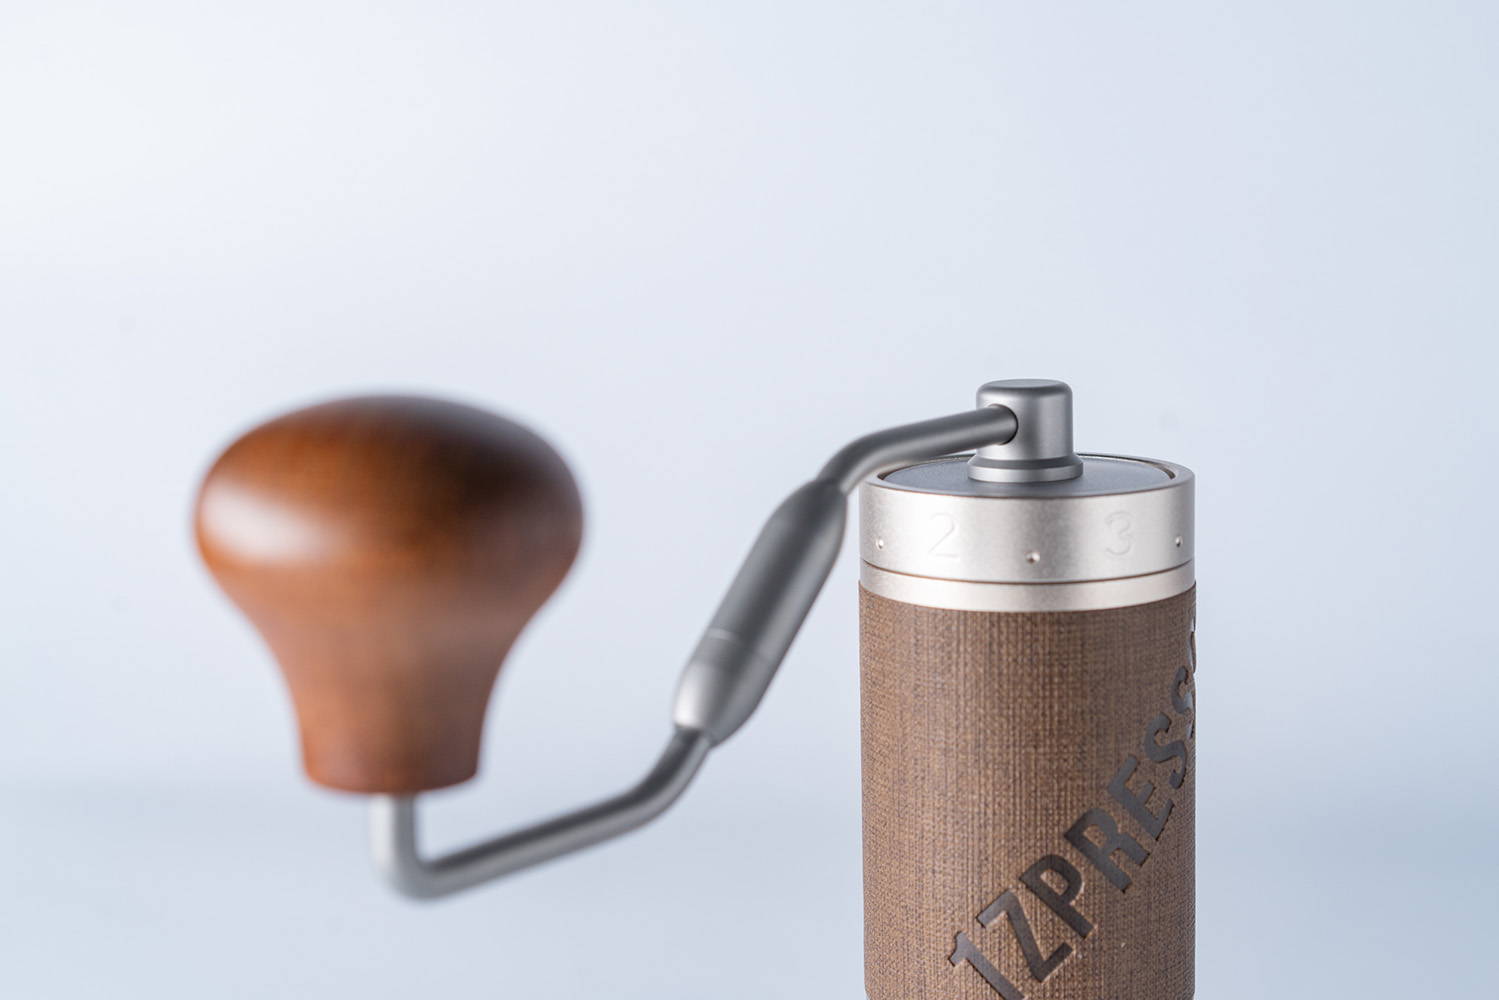 1Zpresso X PRO S - coffee grinder | LessWasteCoffee.com